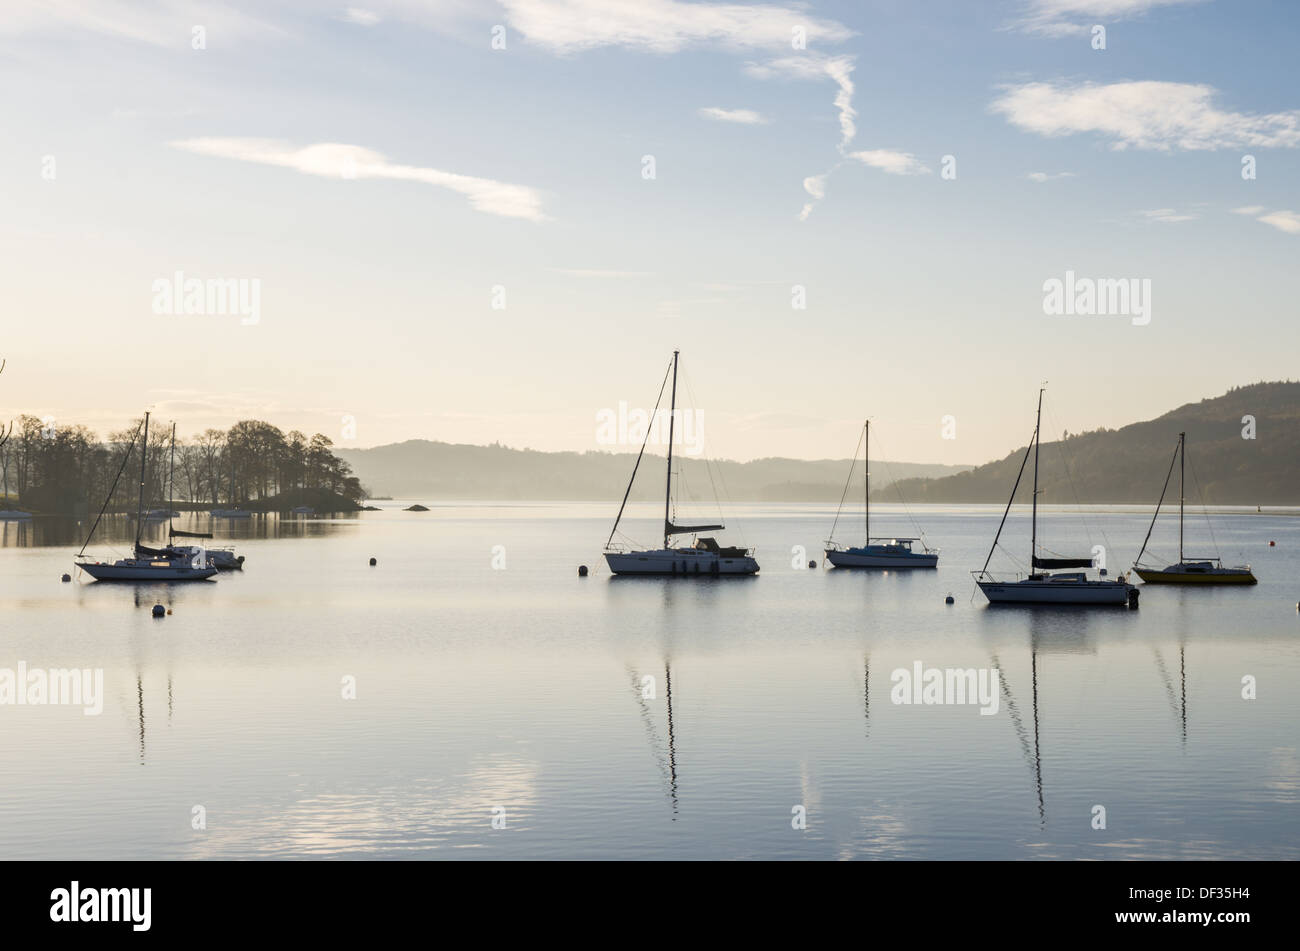 Una bella scena su un lago con acqua calma e yacht barche riflessioni. mattina di sole. lontane colline. Foto Stock